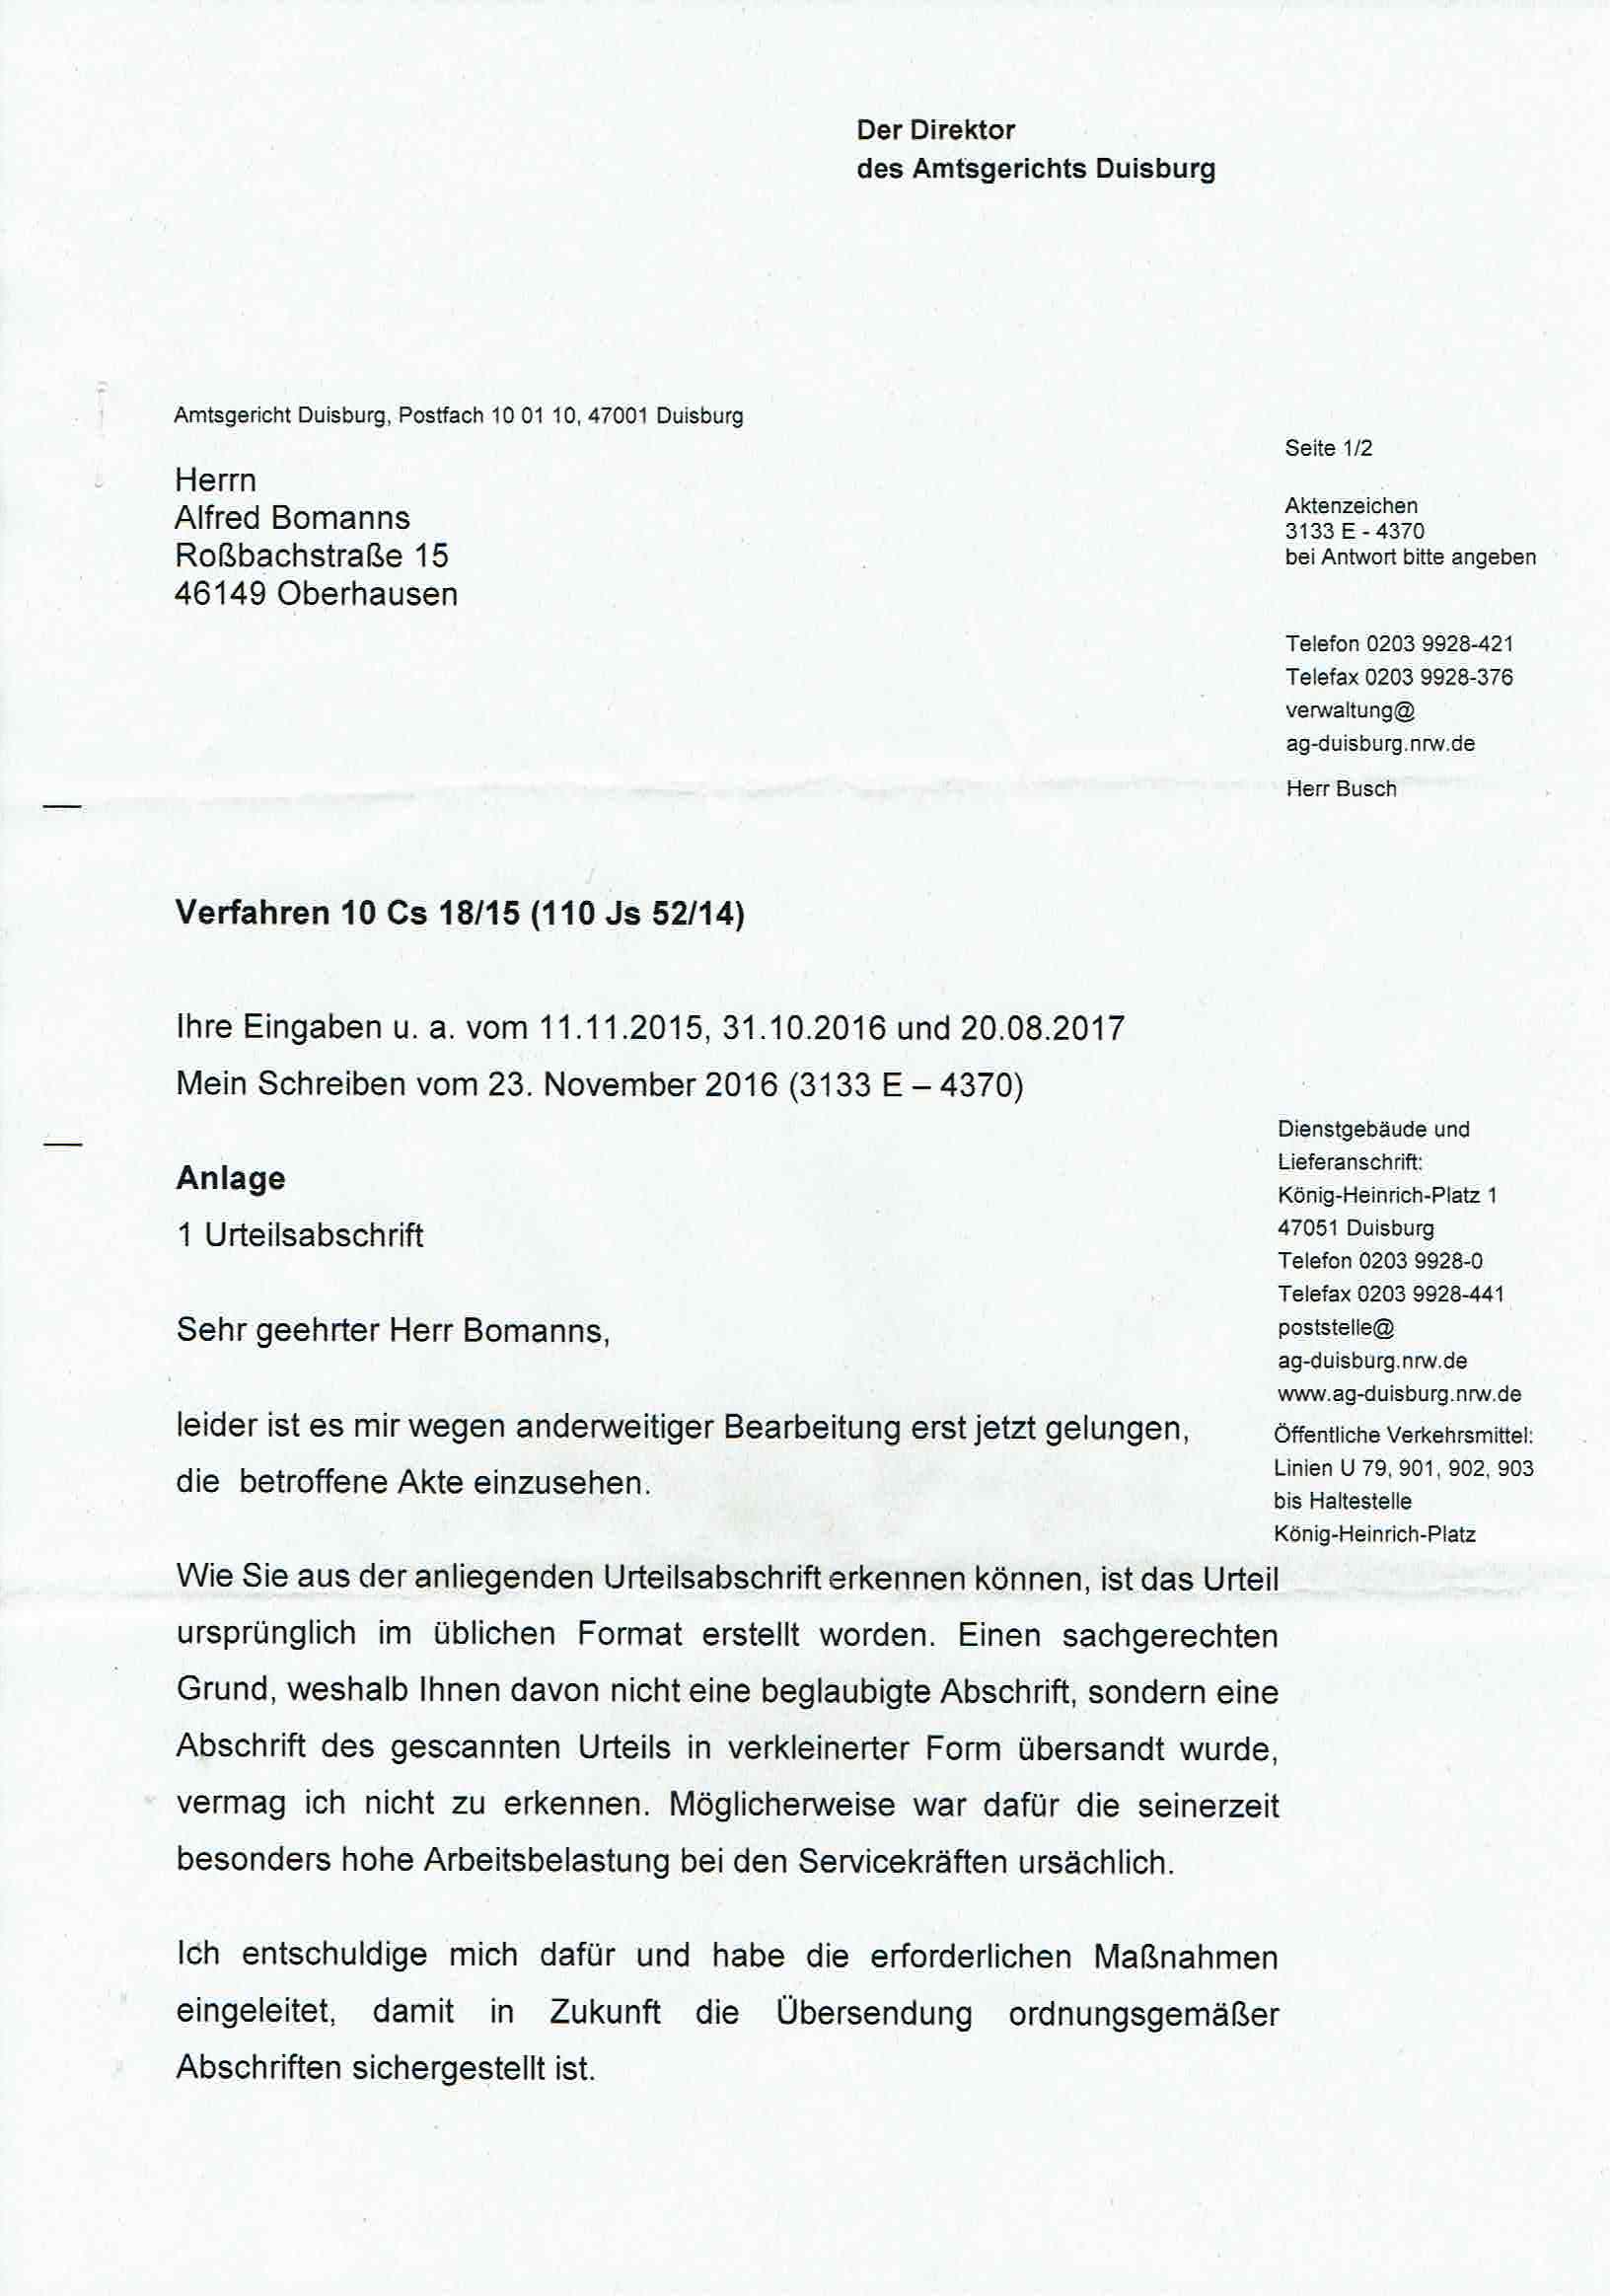 Antwort des Direktors des Amtsgerichts Duisburg vom 19.09.2017, Seite 1